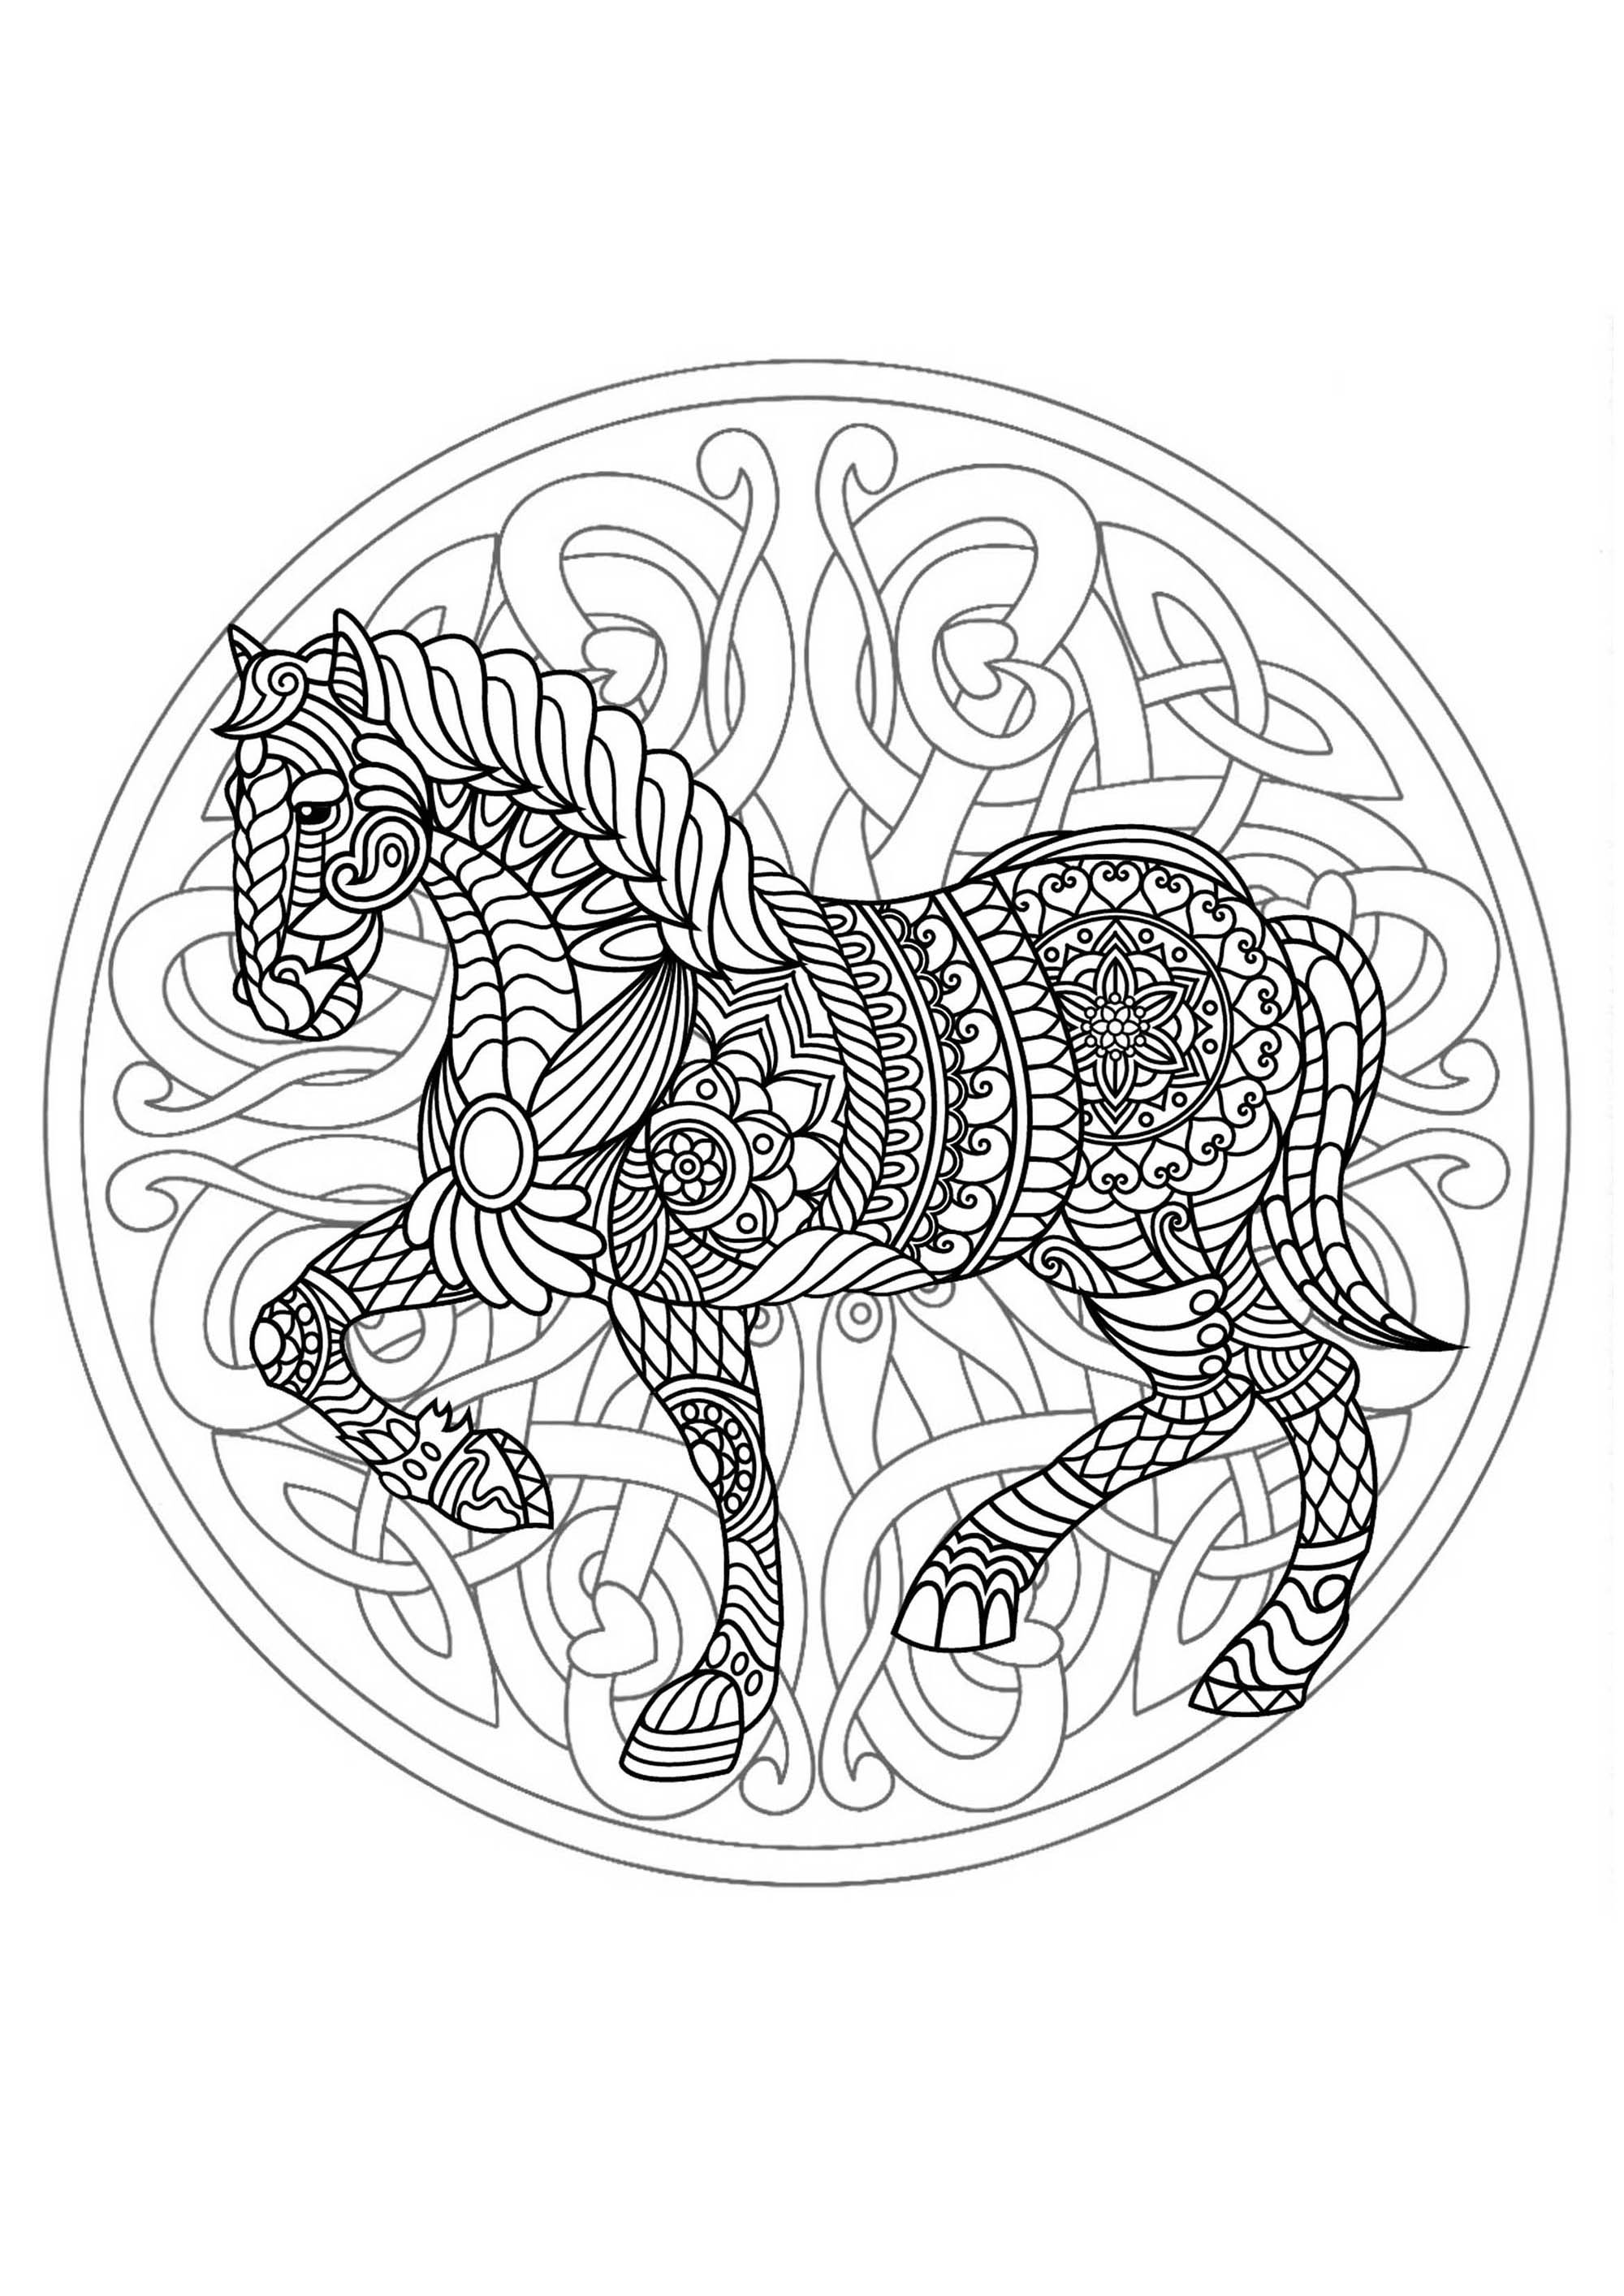 Mandala cheval 3 - Mandalas - Coloriages difficiles pour adultes